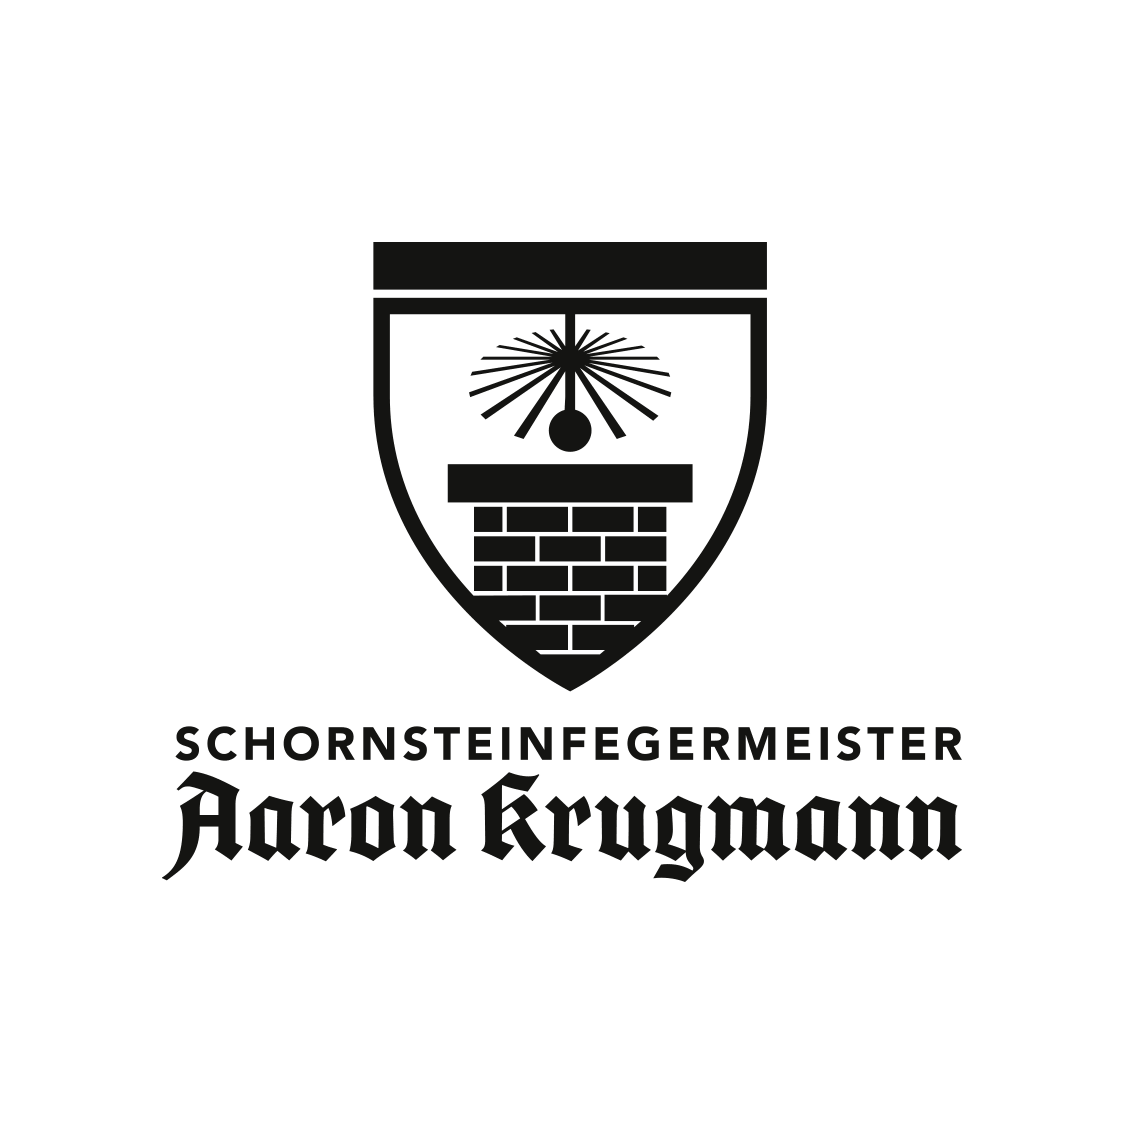 Logoansicht des Schornsteinfegermeisters Aaron Krigmann